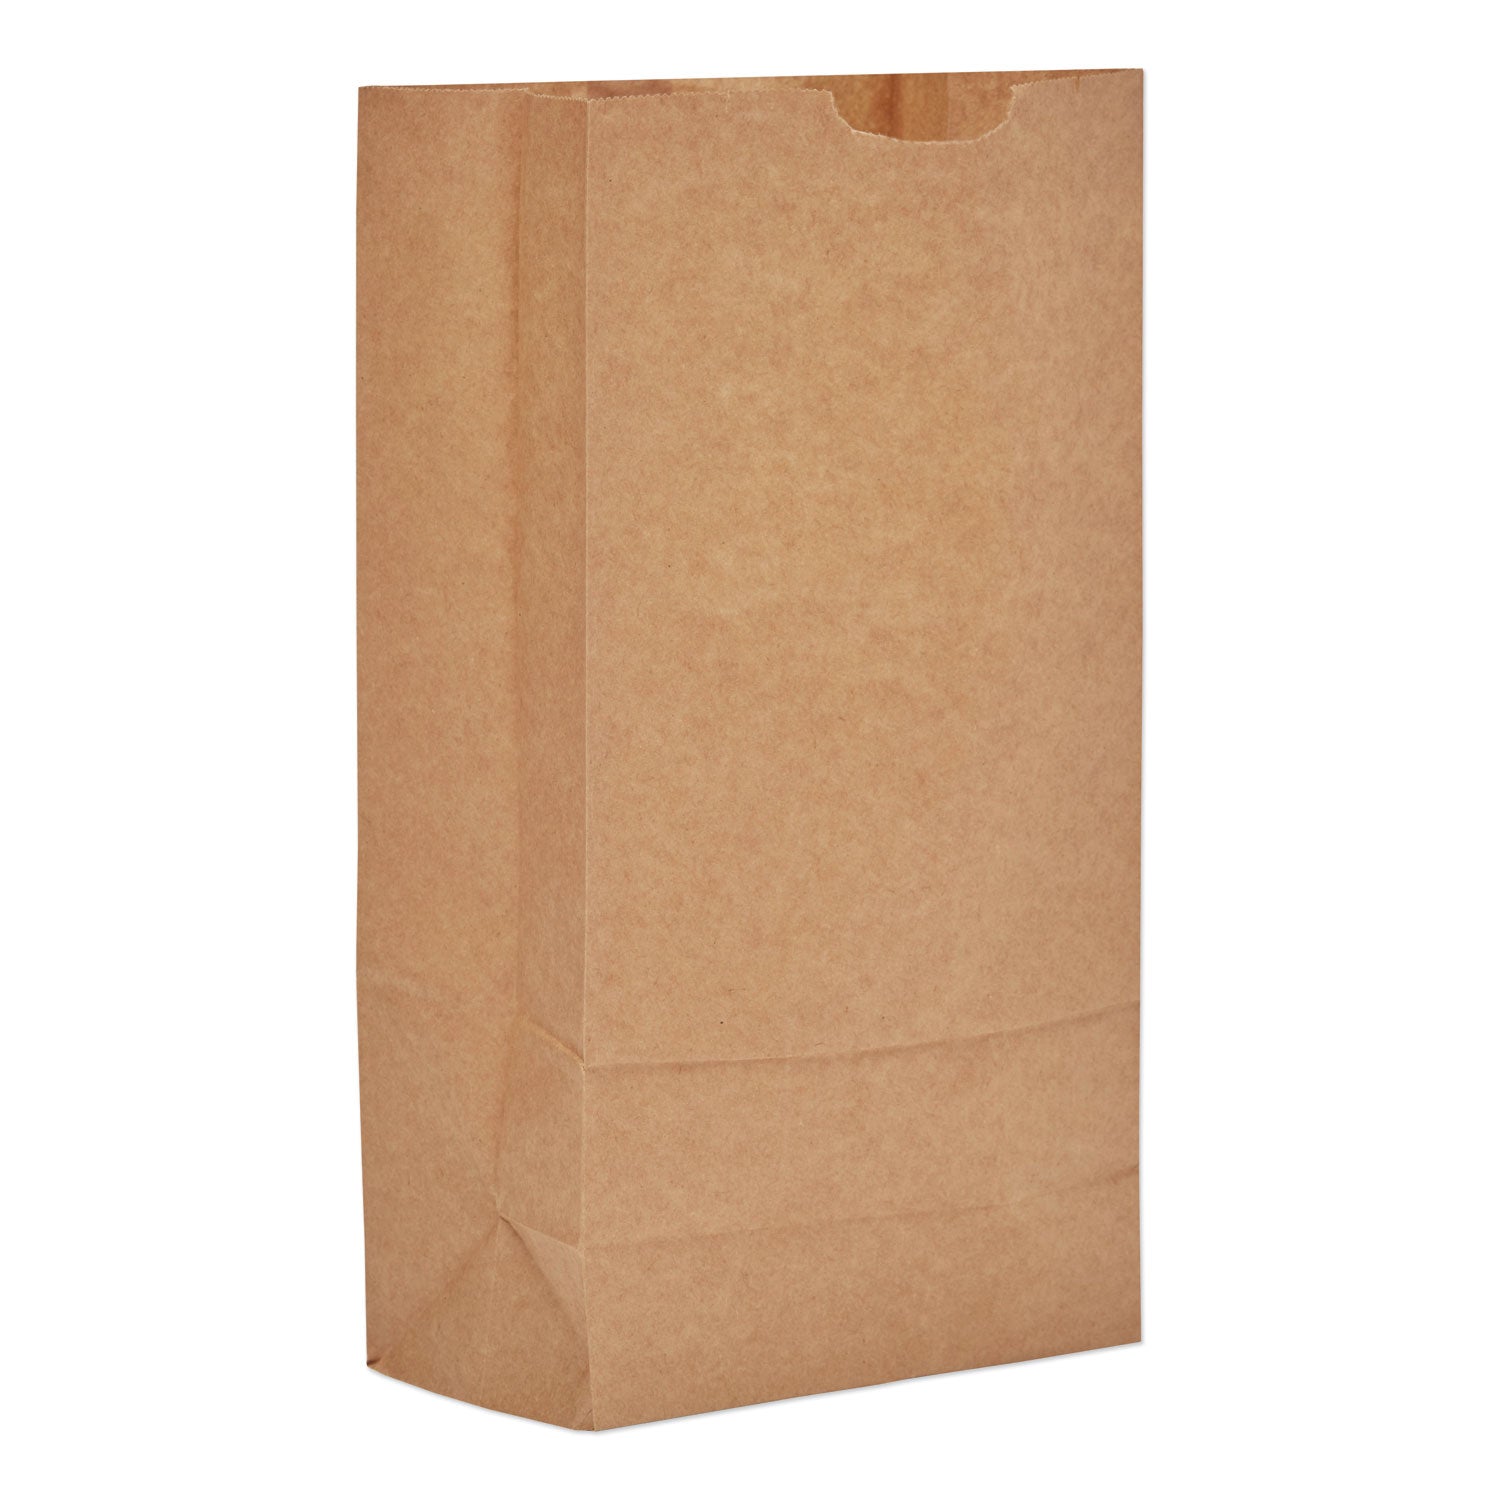 grocery-paper-bags-35-lb-capacity-#10-631-x-419-x-1238-kraft-2000-bags_baggk10 - 1